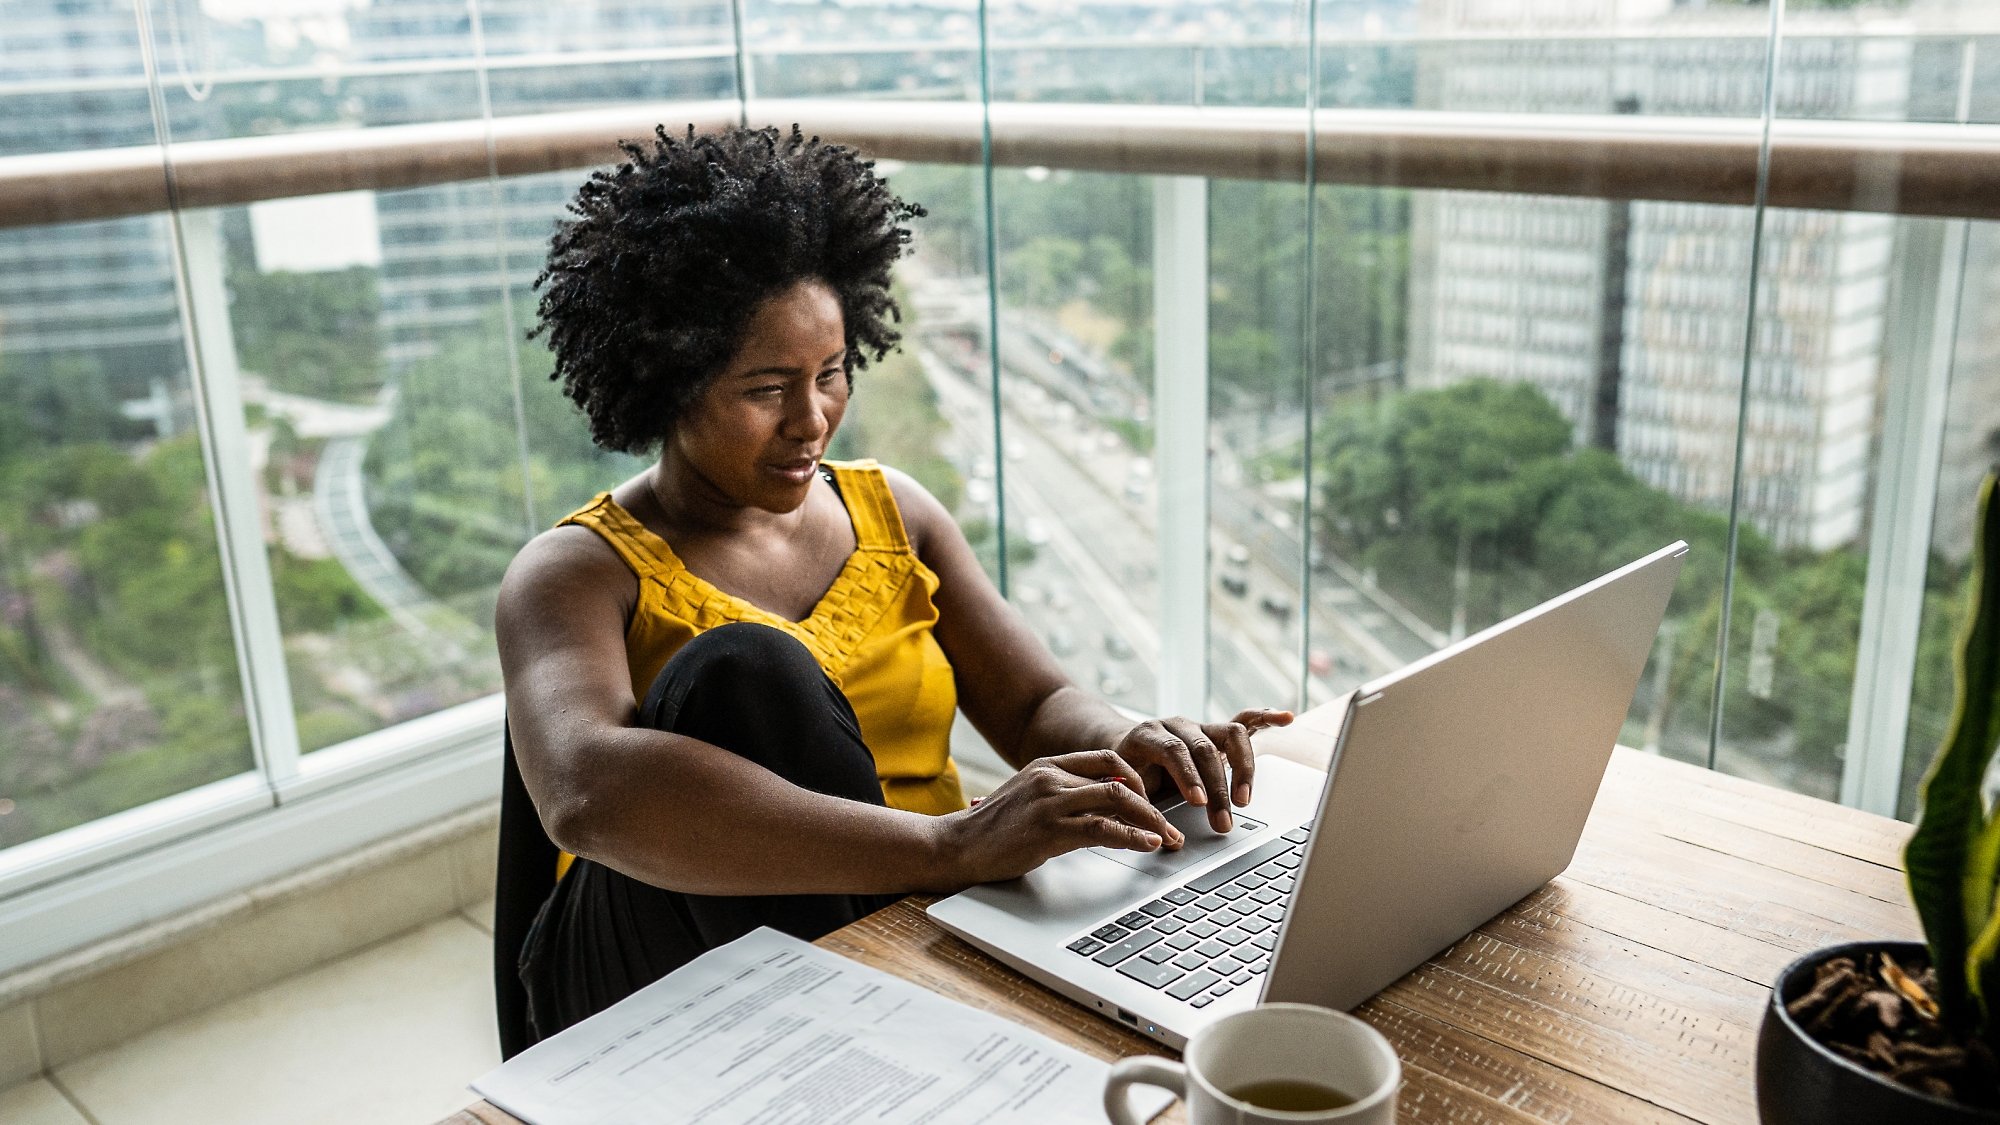 Egy nő egy laptopon dolgozik egy városra néző ablaknál lévő íróasztalnál, mellette dokumentumok és egy kávéscsésze látható.